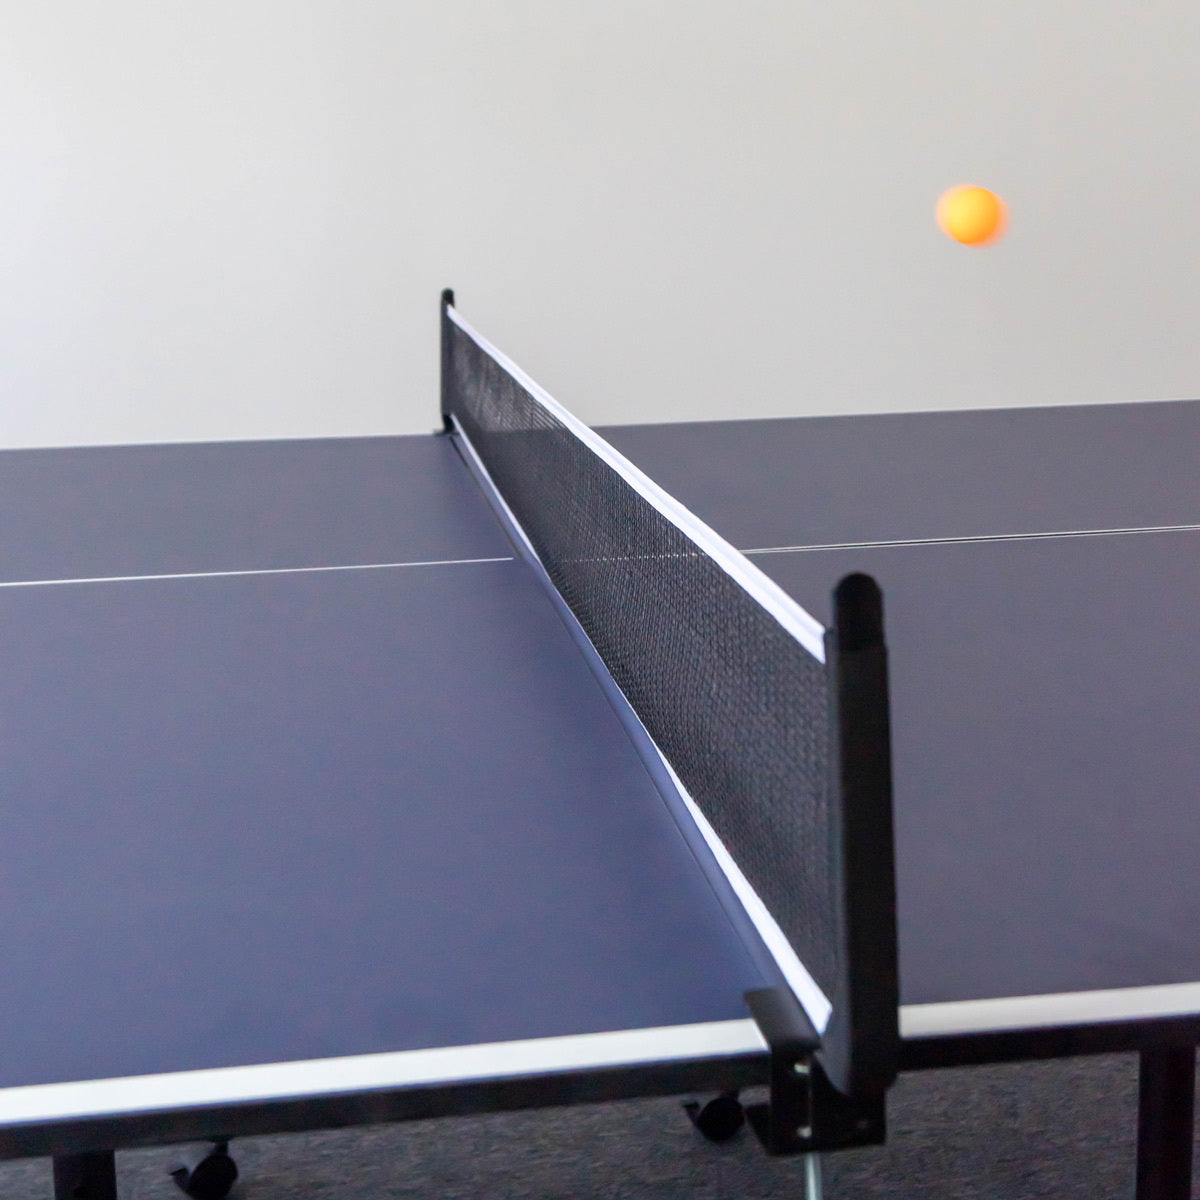 PRO-SPIN Table de ping-pong de taille moyenne, Table pliable d'intérieur  et d'extérieur, 100 % pré-assemblée, Comprend 4 raquettes de ping-pong, 8  balles de ping-pong, filet, housse de table